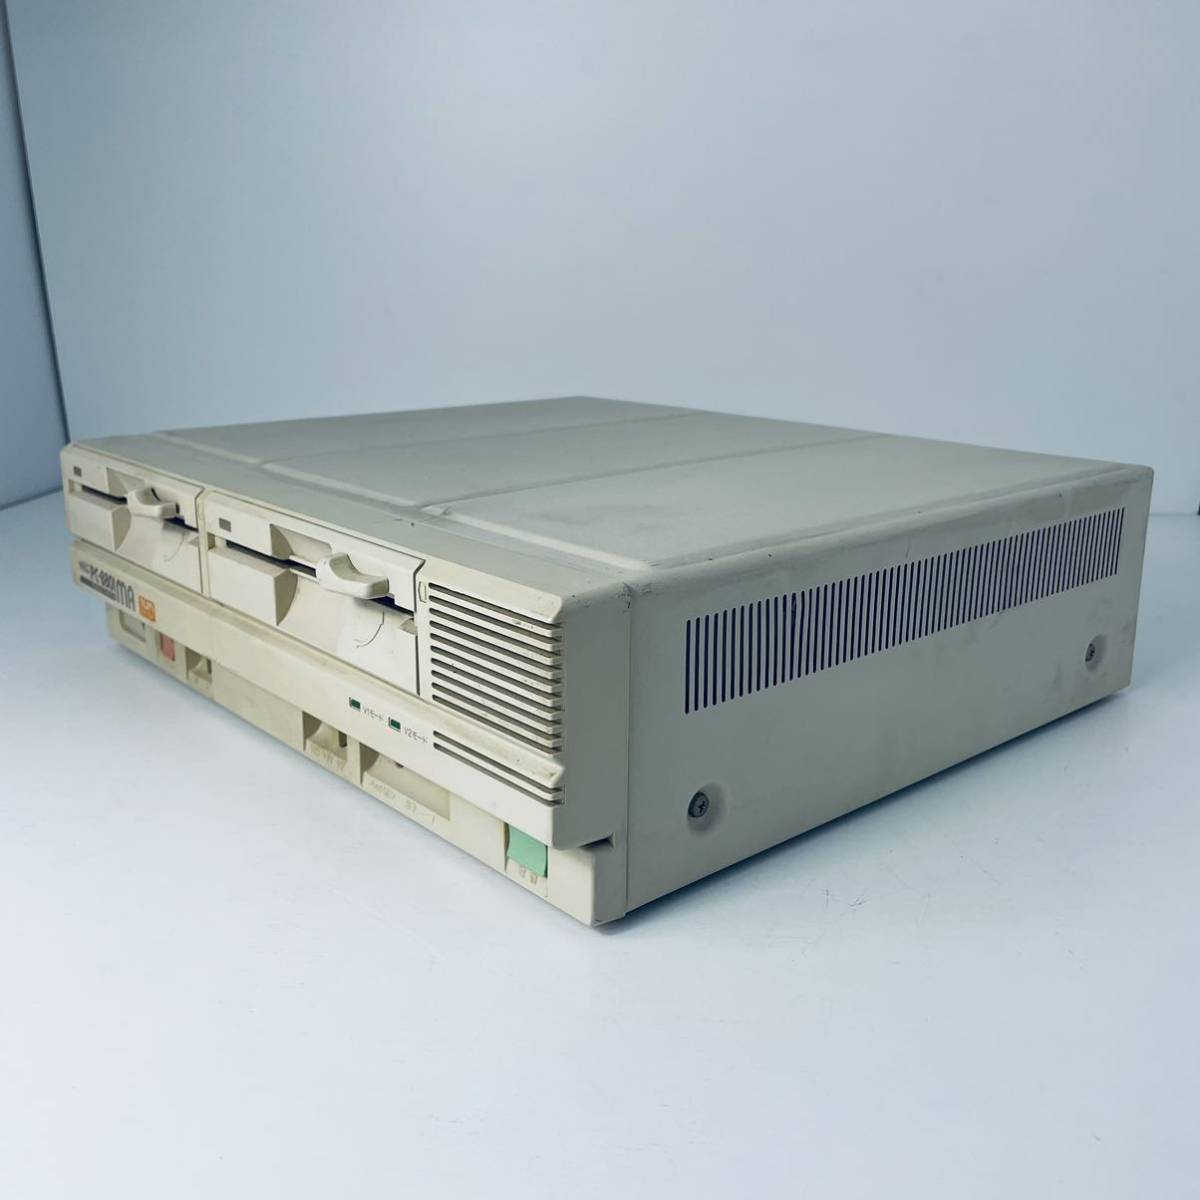  пуск игра работа сделал NEC PC-8801MA 2HD FM источник звука 